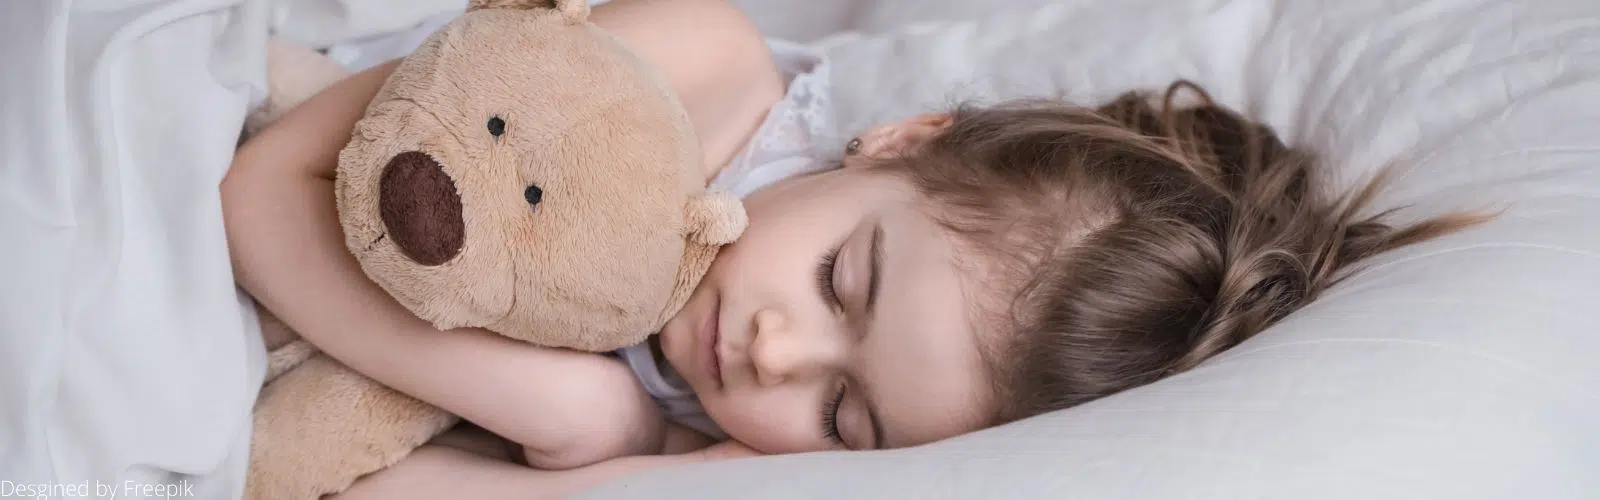 Rituel du coucher : comment aider son enfant à bien dormir